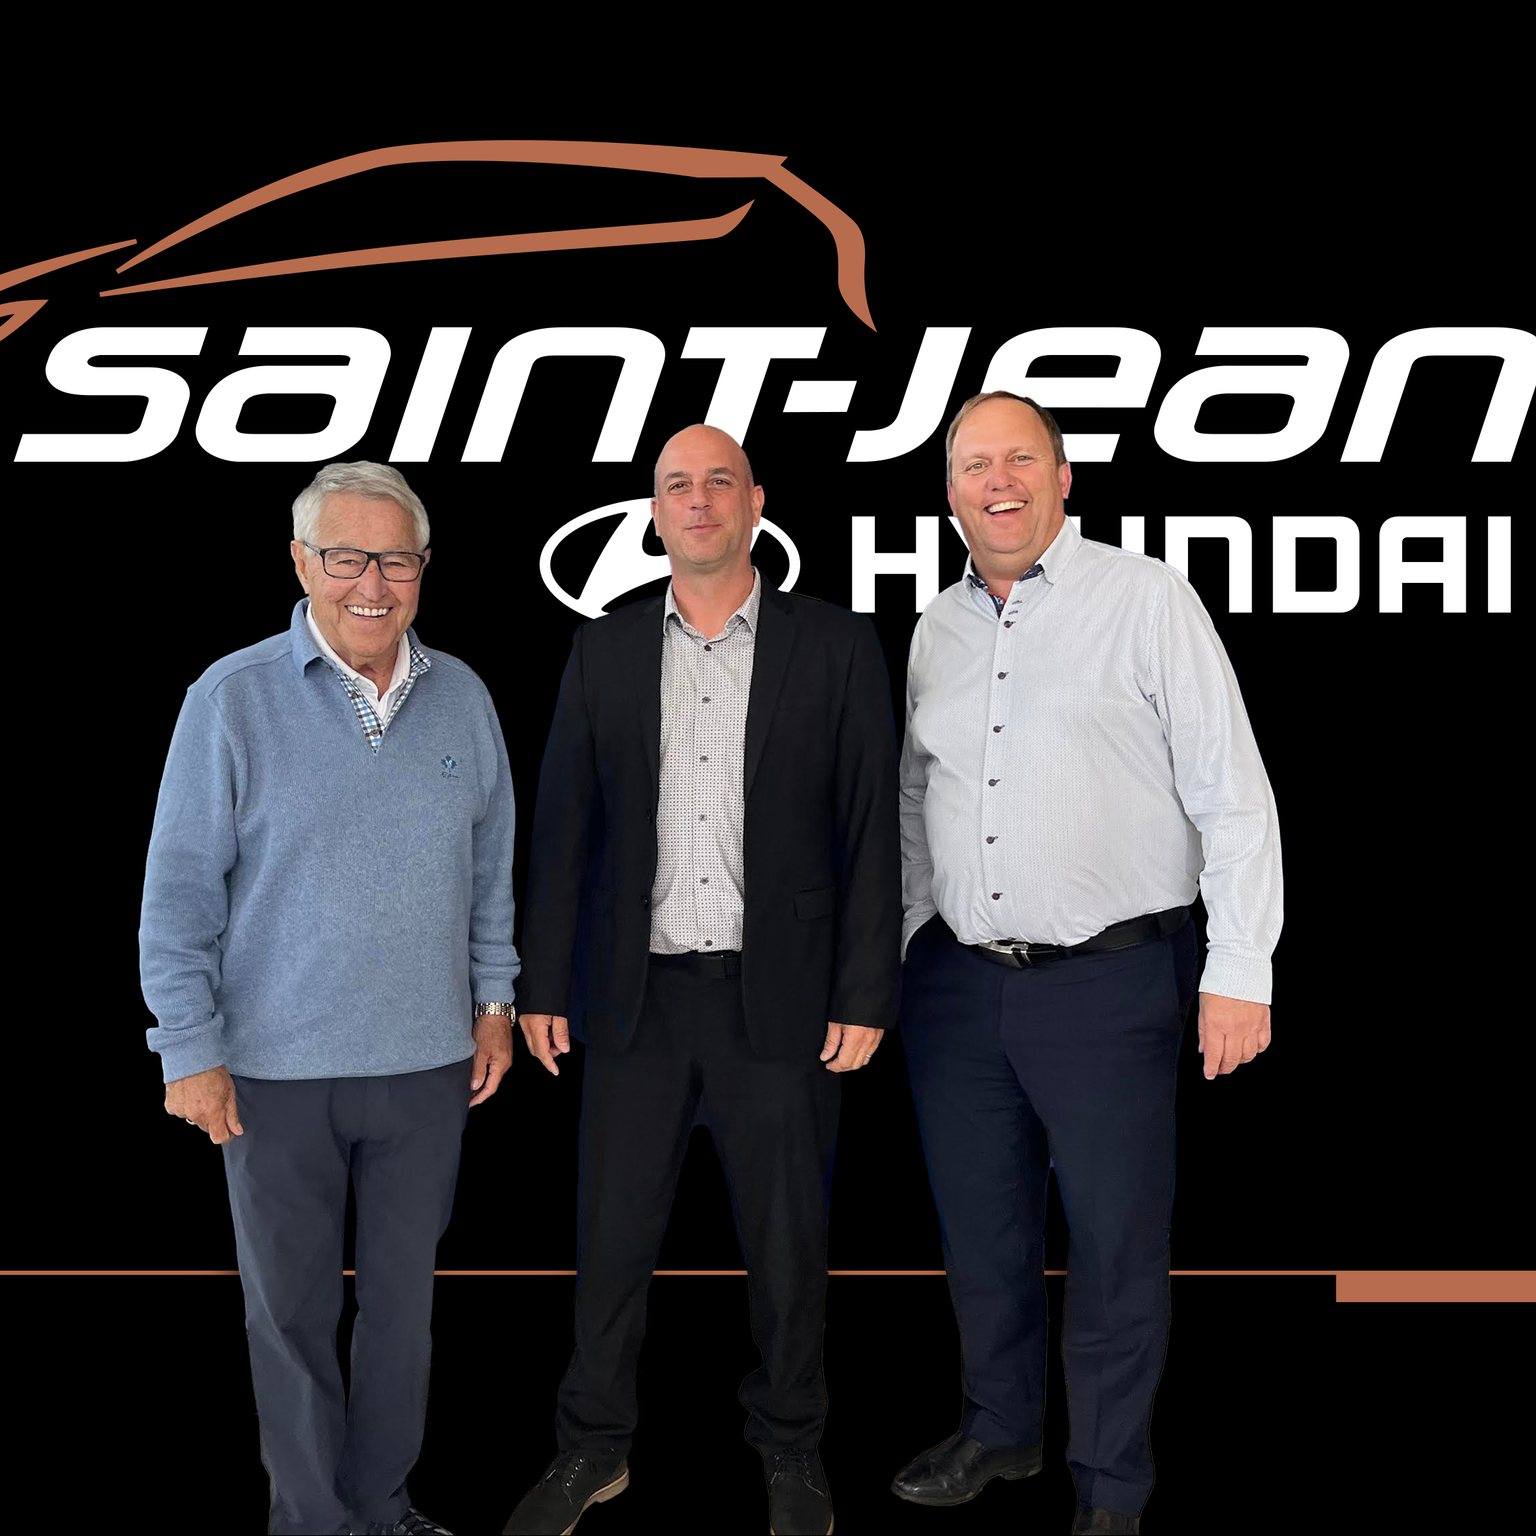 Dans l'ordre habituel : Michel Bergeron, porte-parole et client de Saint-Jean Hyundai, Patrick Pelchat, directeur des ventes - véhicules d'occasion chez Saint-Jean Hyundai et François Duquette, propriétaire de Saint-Jean Hyundai.